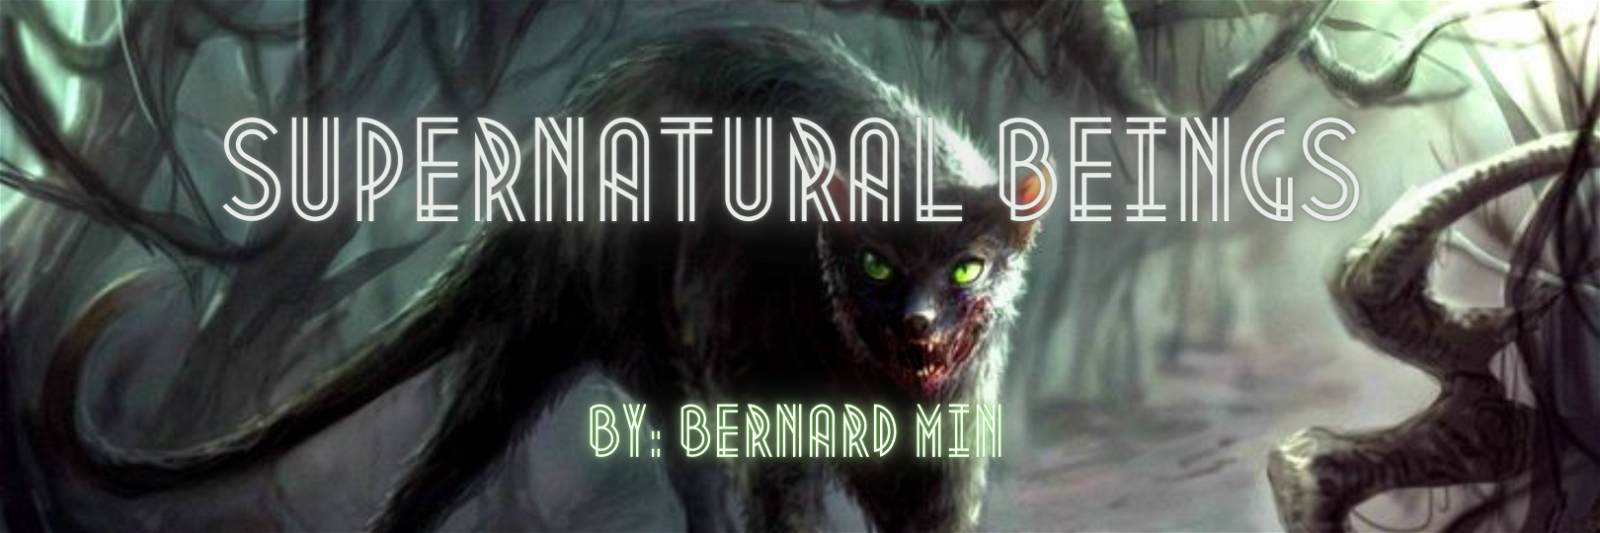 Supernatural Beings by Bernard #6